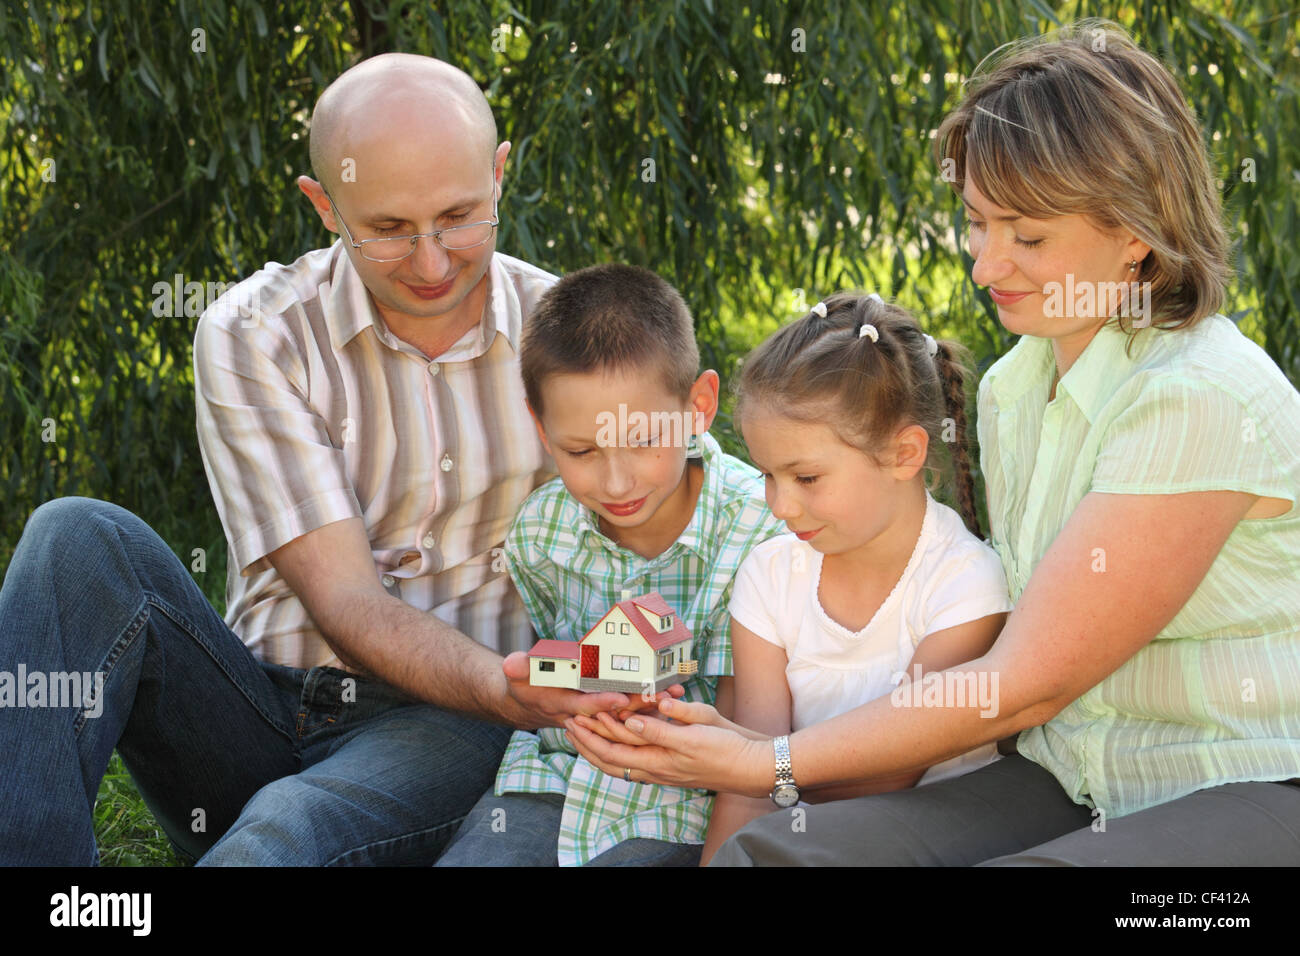 Famiglia in inizio di caduta park. padre, madre, poco un ragazzo e una ragazza è seduta sul prato nei pressi di vimini e guardando wendy house. Foto Stock